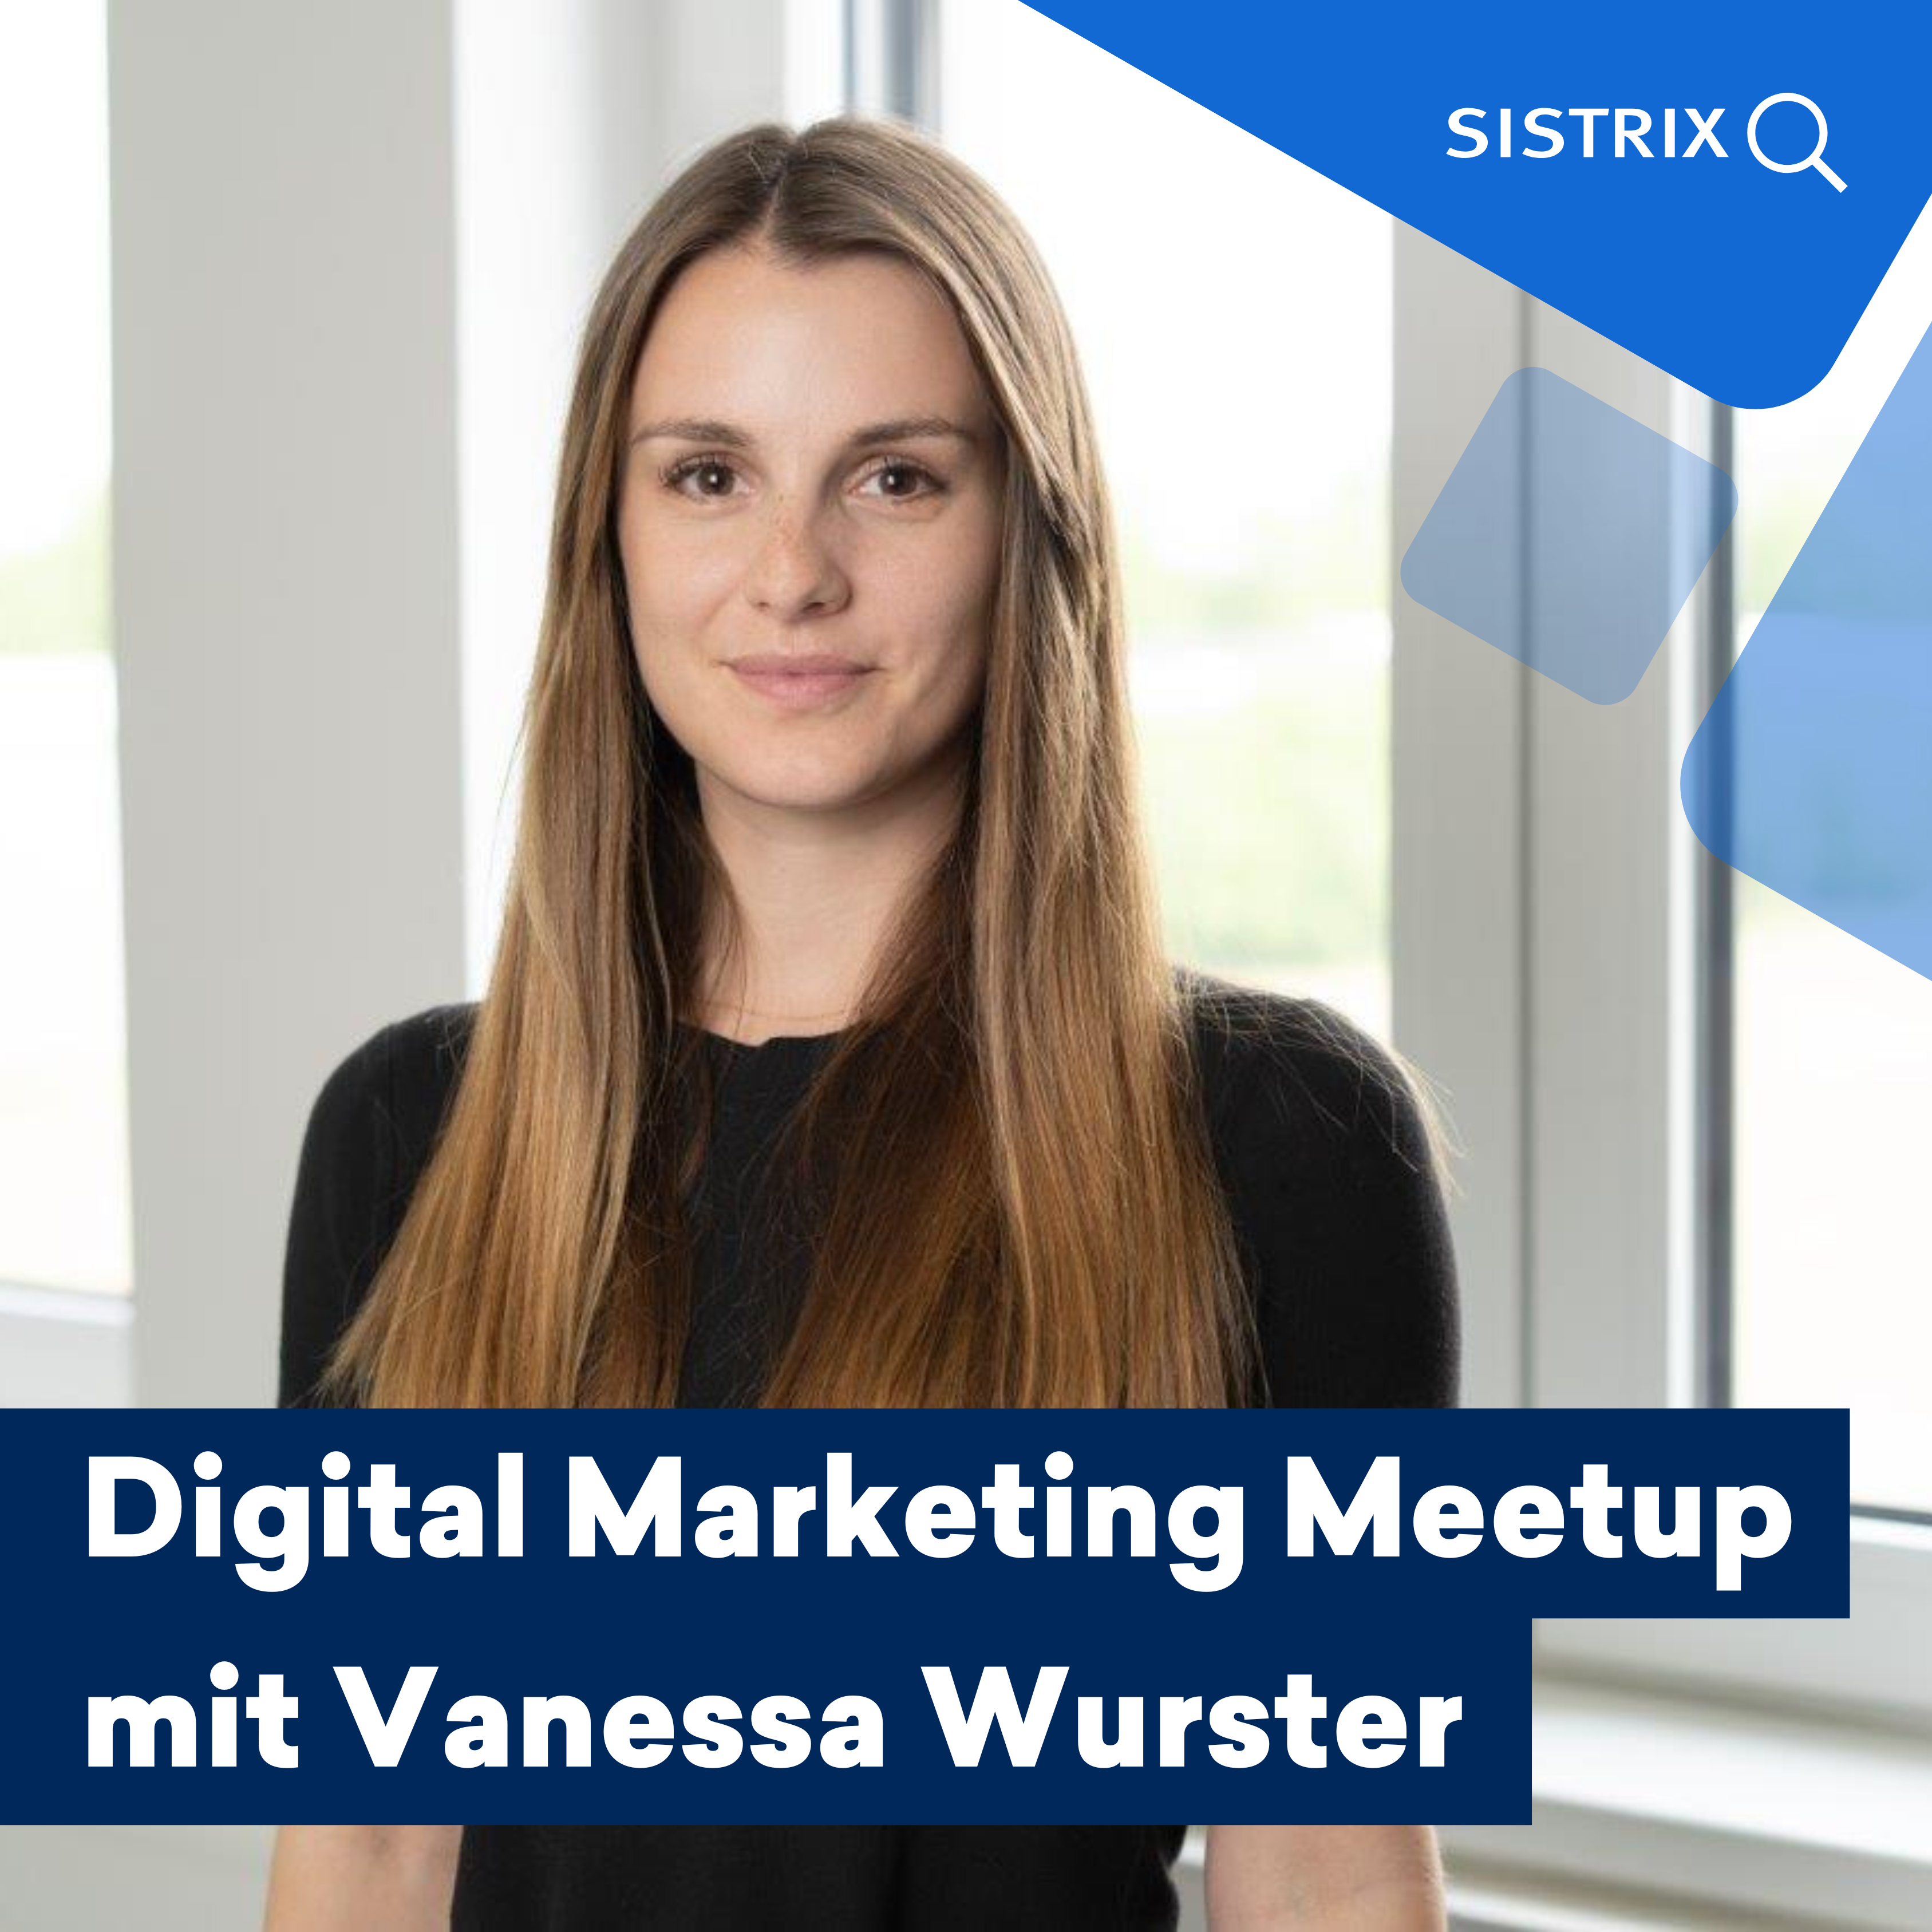 SEO-Expertin Vanessa Wurster als Speakerin beim nächsten SISTRIX Digital Marketing Meetup